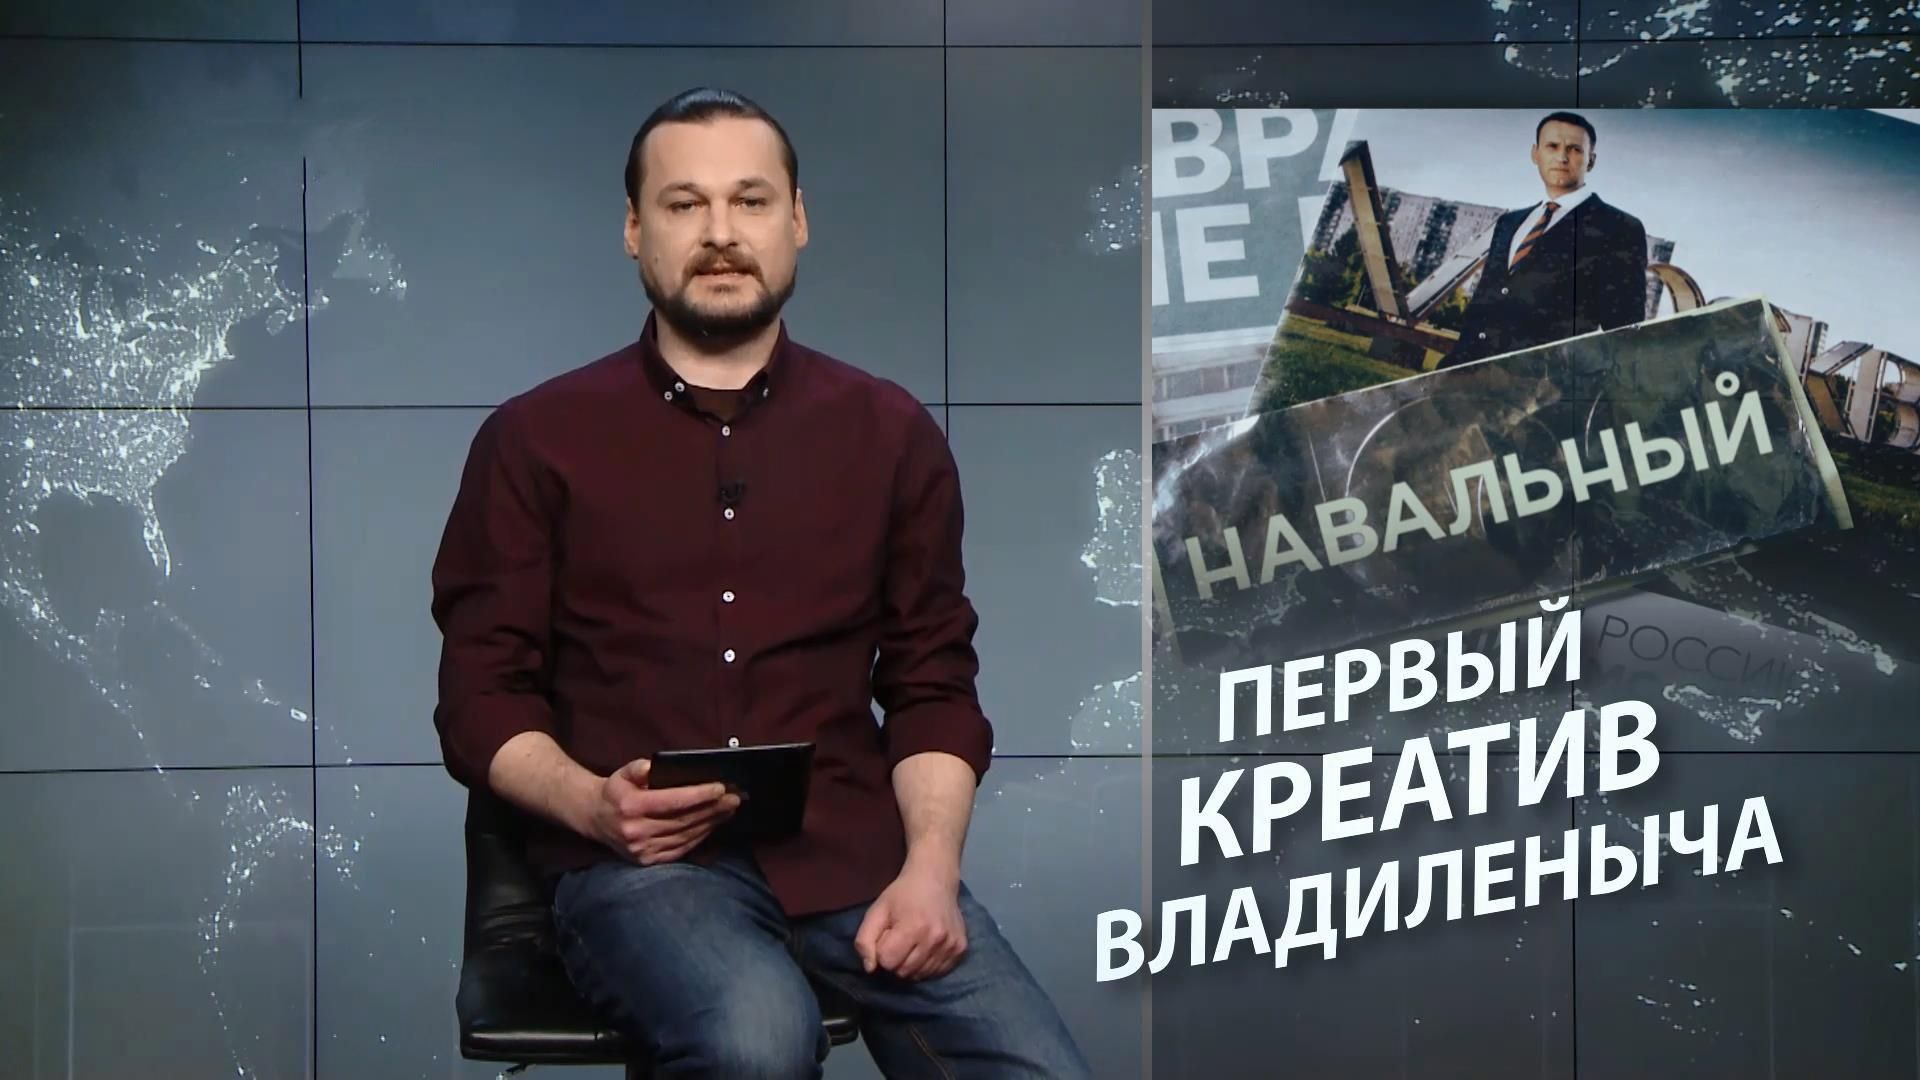 Безумный мир. Навальный – это Гитлер. Франция выбирает президента - 21 апреля 2017 - Телеканал новин 24